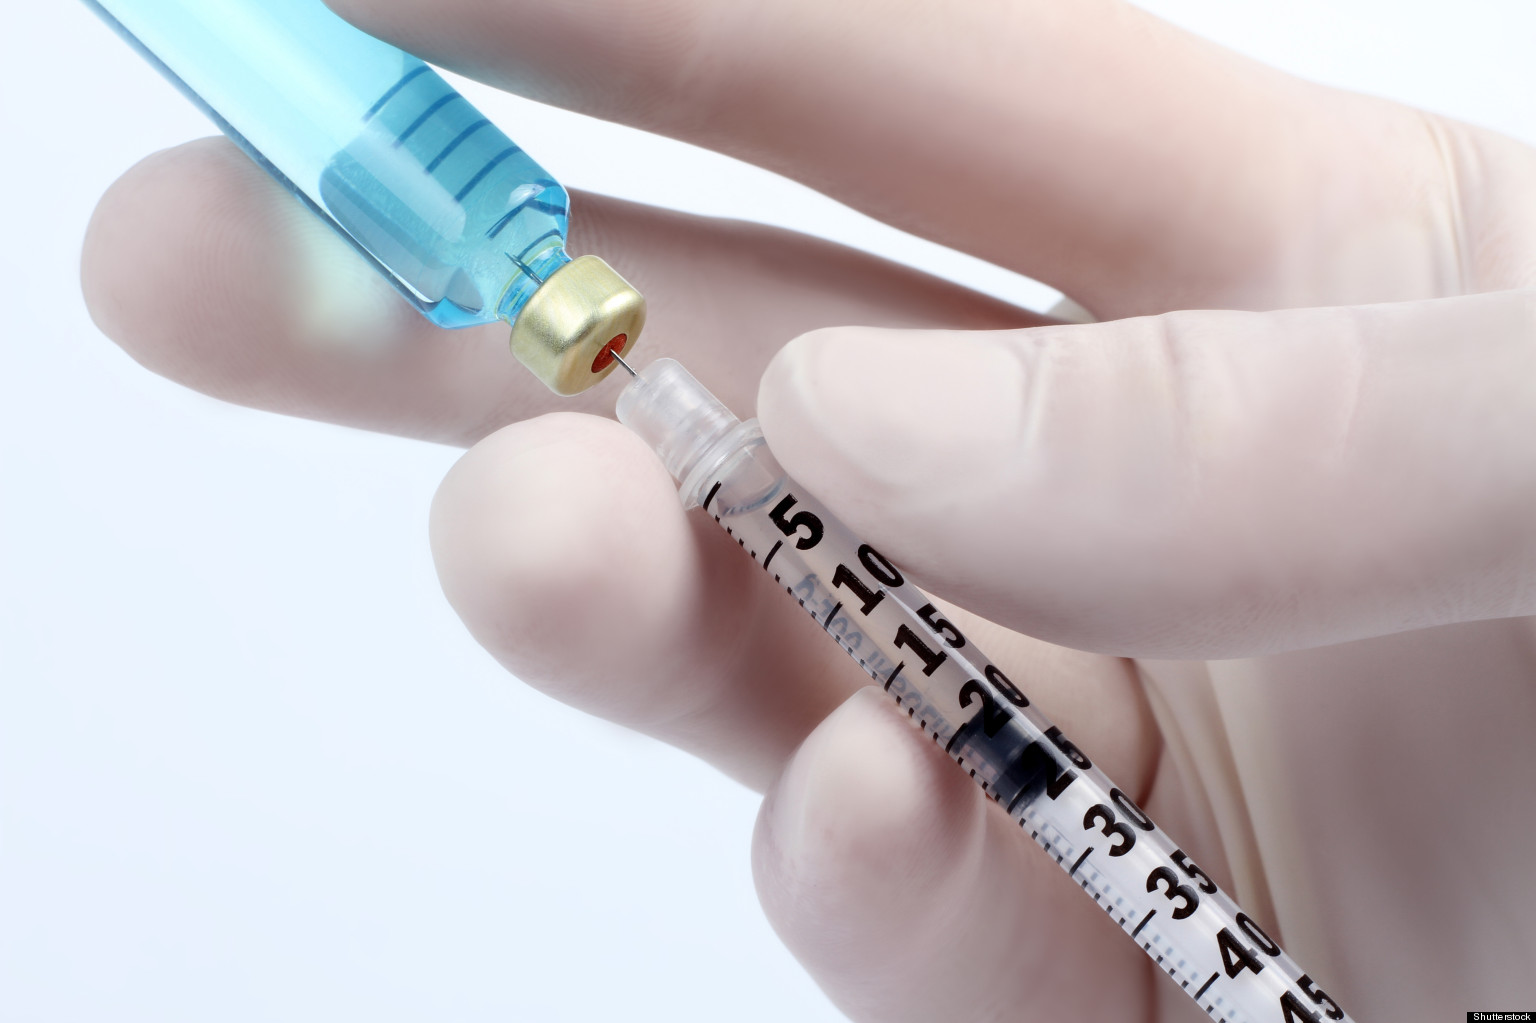 Hepatitis C Vaccine